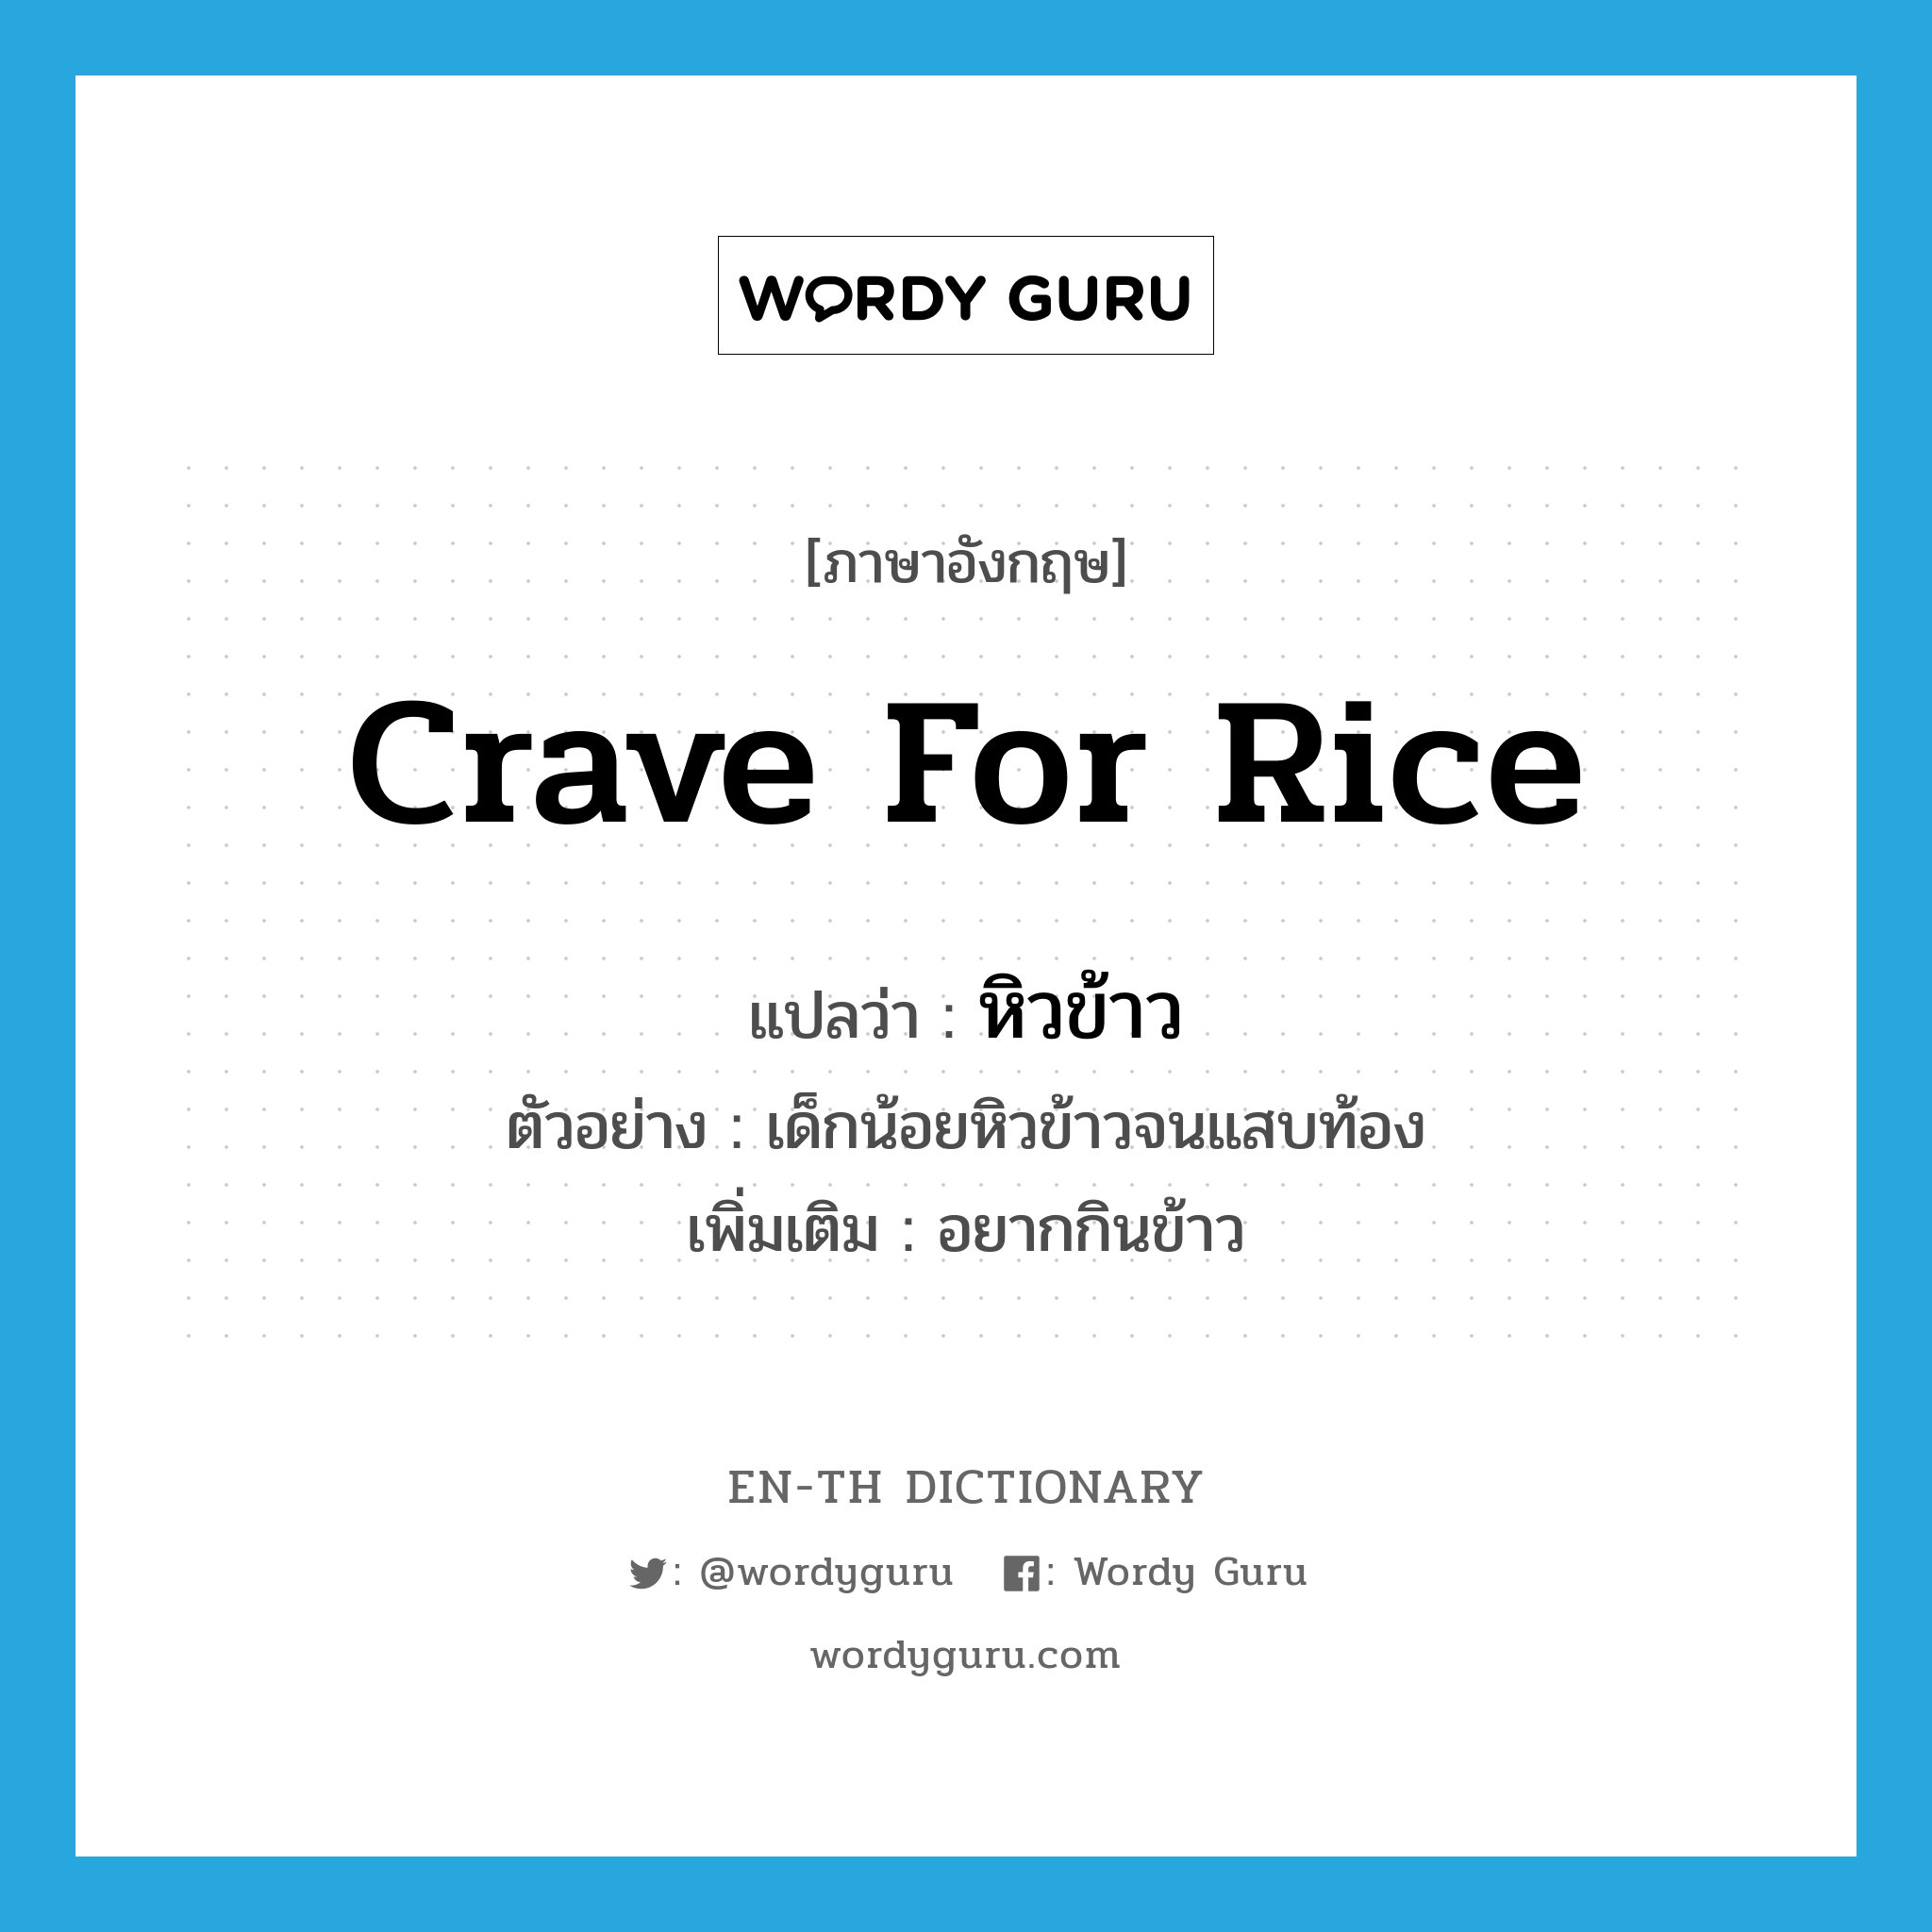 หิวข้าว ภาษาอังกฤษ?, คำศัพท์ภาษาอังกฤษ หิวข้าว แปลว่า crave for rice ประเภท V ตัวอย่าง เด็กน้อยหิวข้าวจนแสบท้อง เพิ่มเติม อยากกินข้าว หมวด V